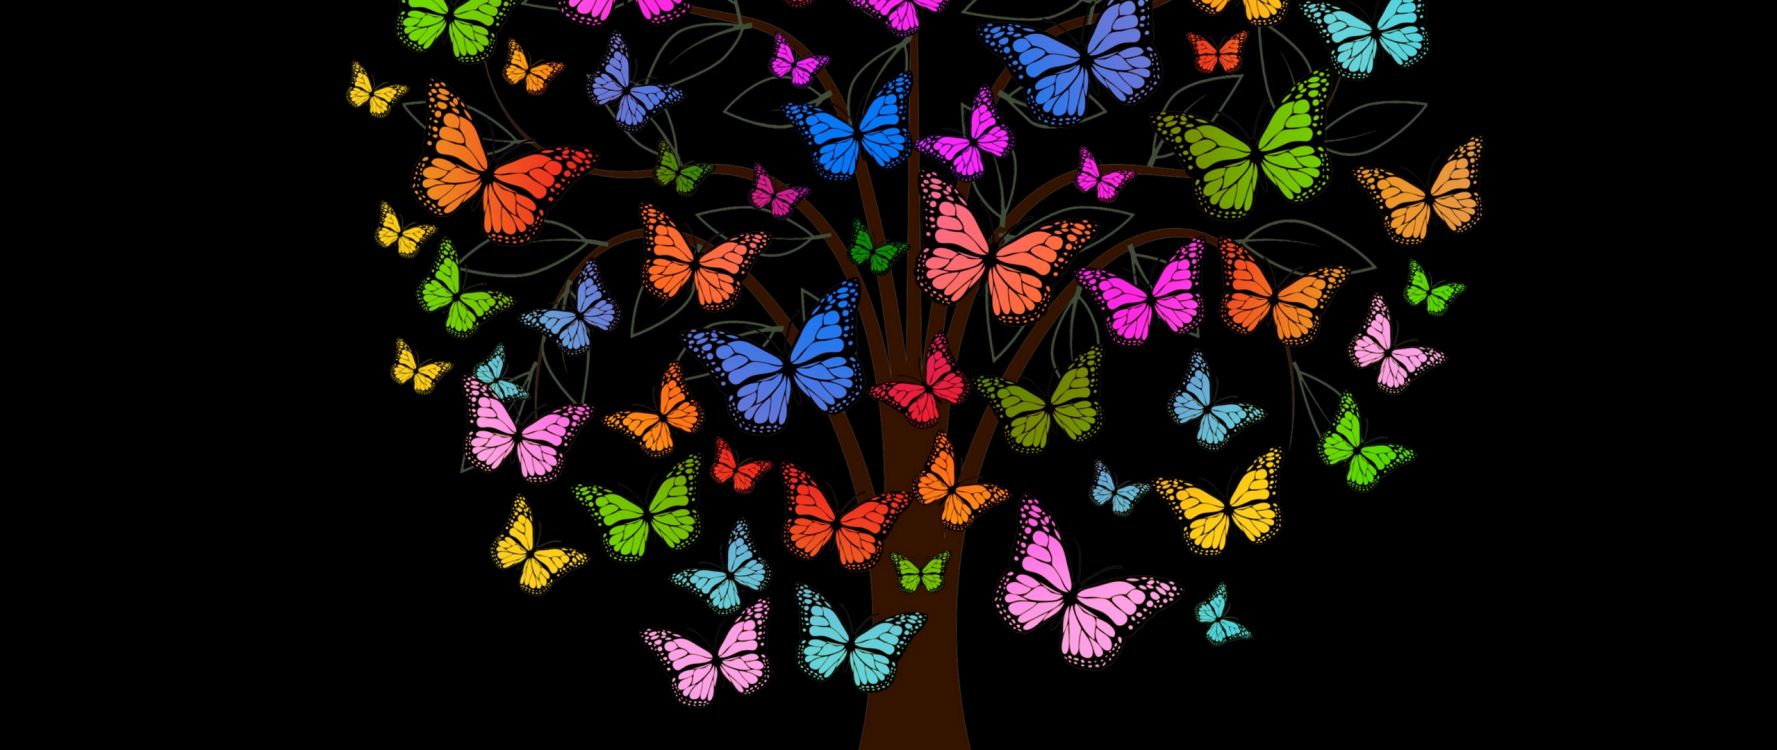 飞蛾和蝴蝶, 创造性的艺术, 帝王蝶, 昆虫, 艺术 壁纸 2560x1080 允许